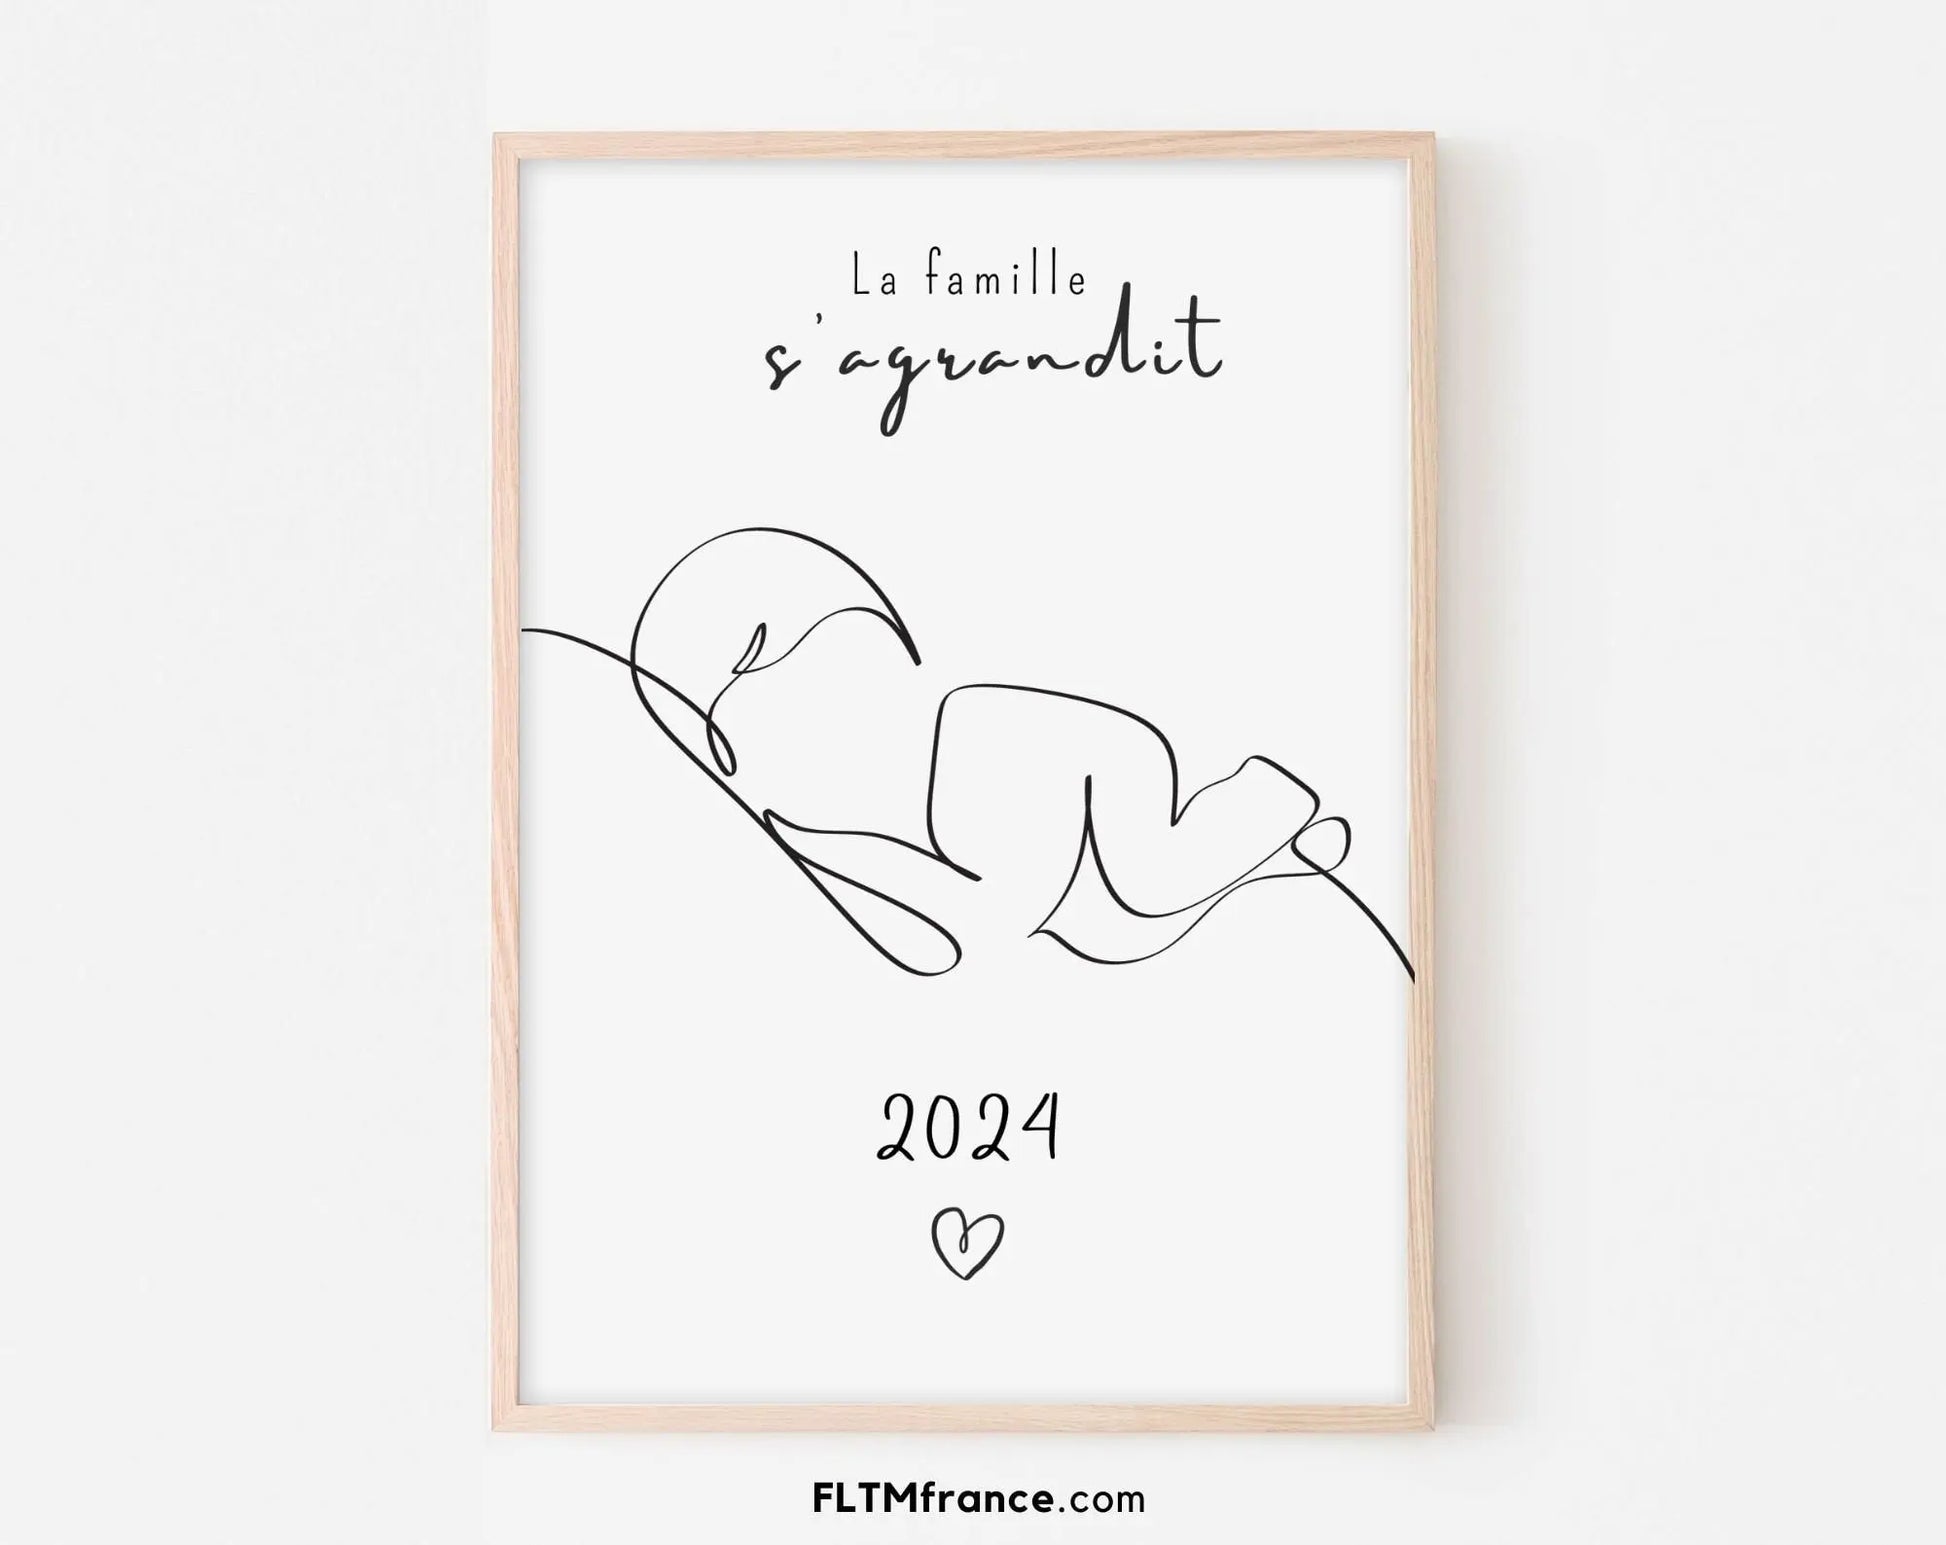 La famille s'agrandit - Affiche annonce grossesse 2024 FLTMfrance